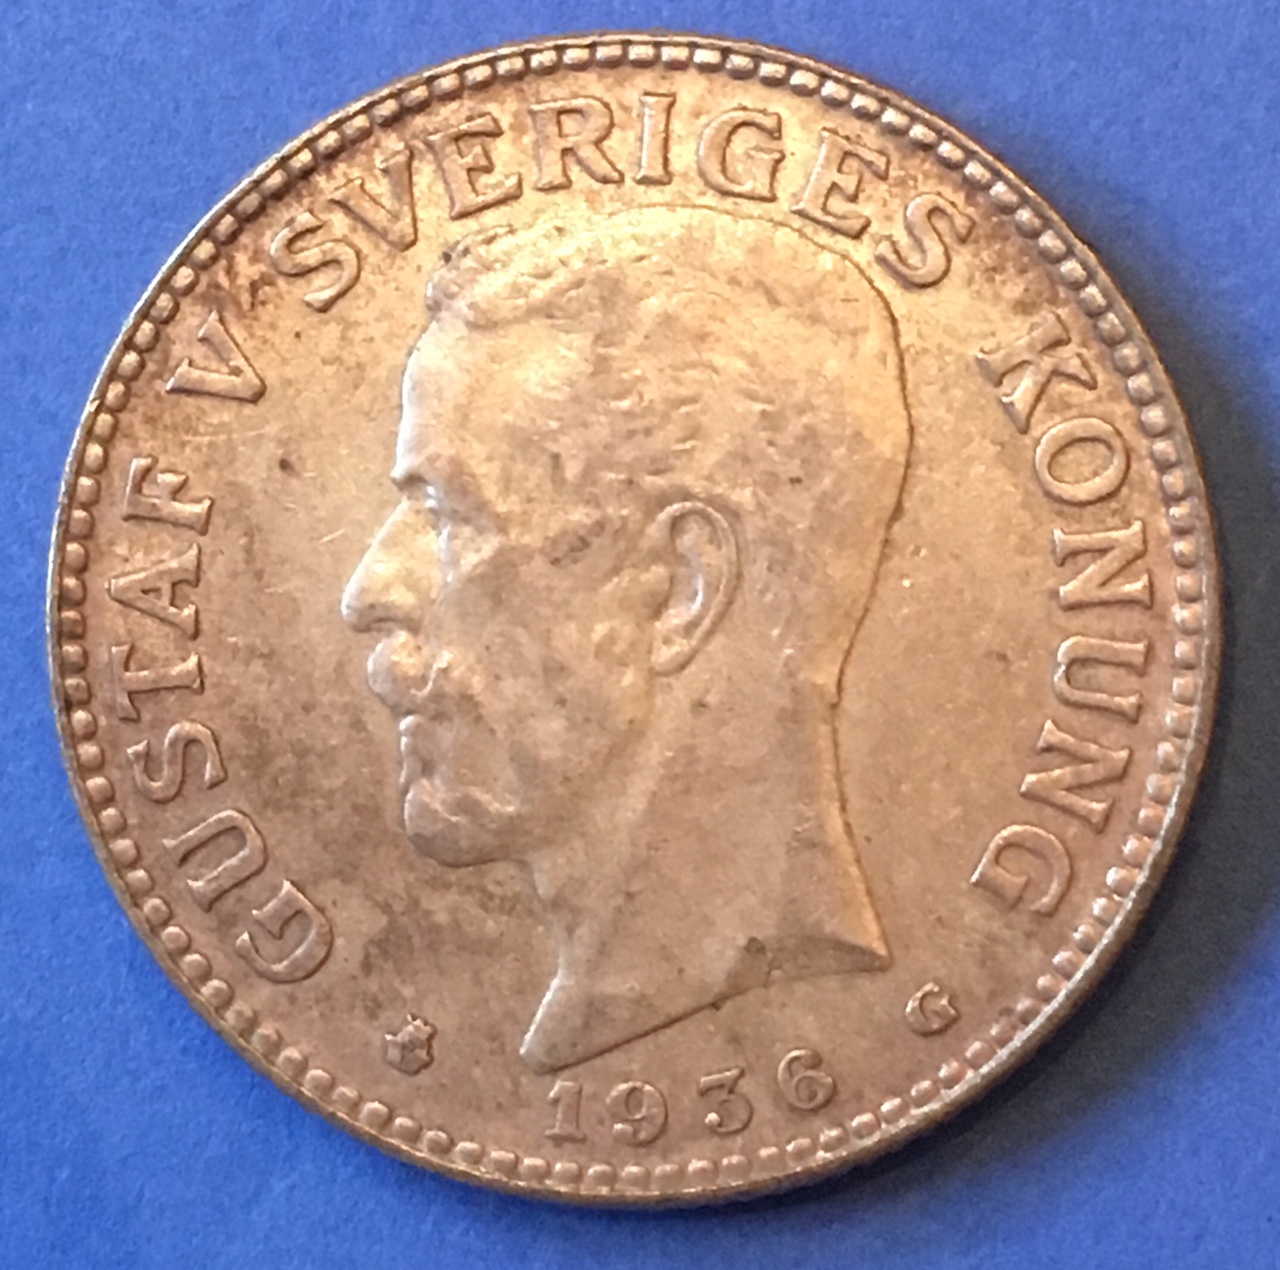 sweden 1936 2 kronor_obv.jpg